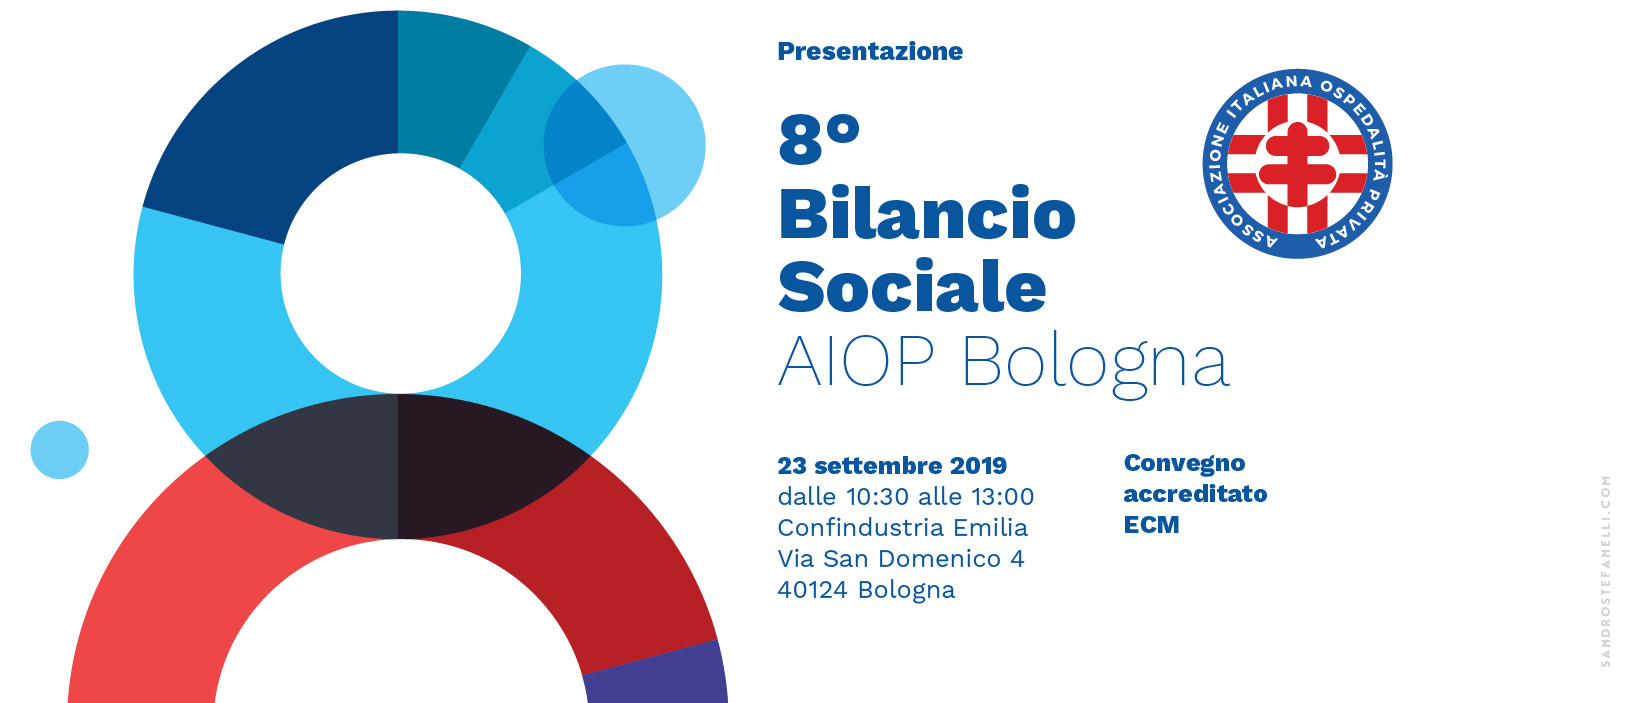 Presentazione 8° Bilancio sociale AIOP Bologna 